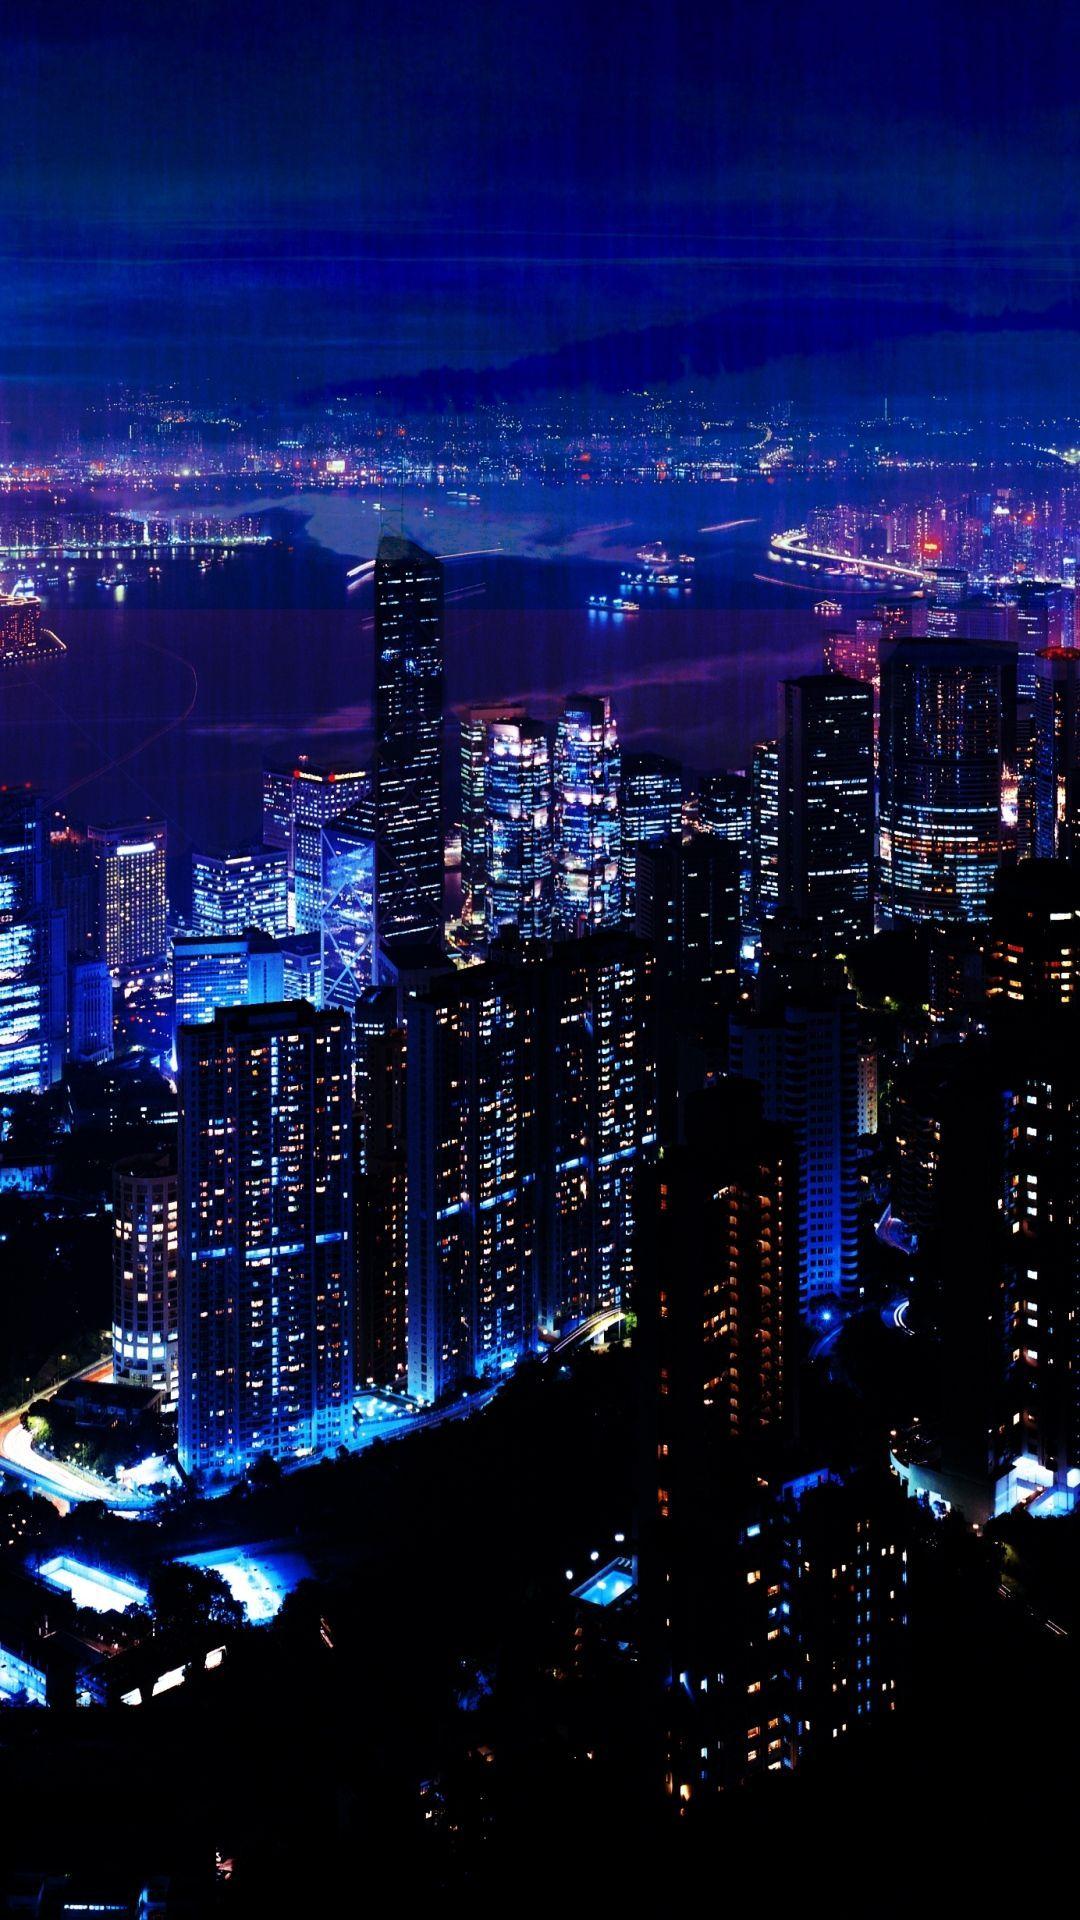 Hình nền City Night Sky Wallpaper làm bạn đắm say trong những cảnh đẹp của thành phố về đêm. Hãy xem hình ảnh liên quan để cảm nhận sự huyền bí, lãng mạn và đầy sức cuốn hút của bầu trời đêm thành phố.